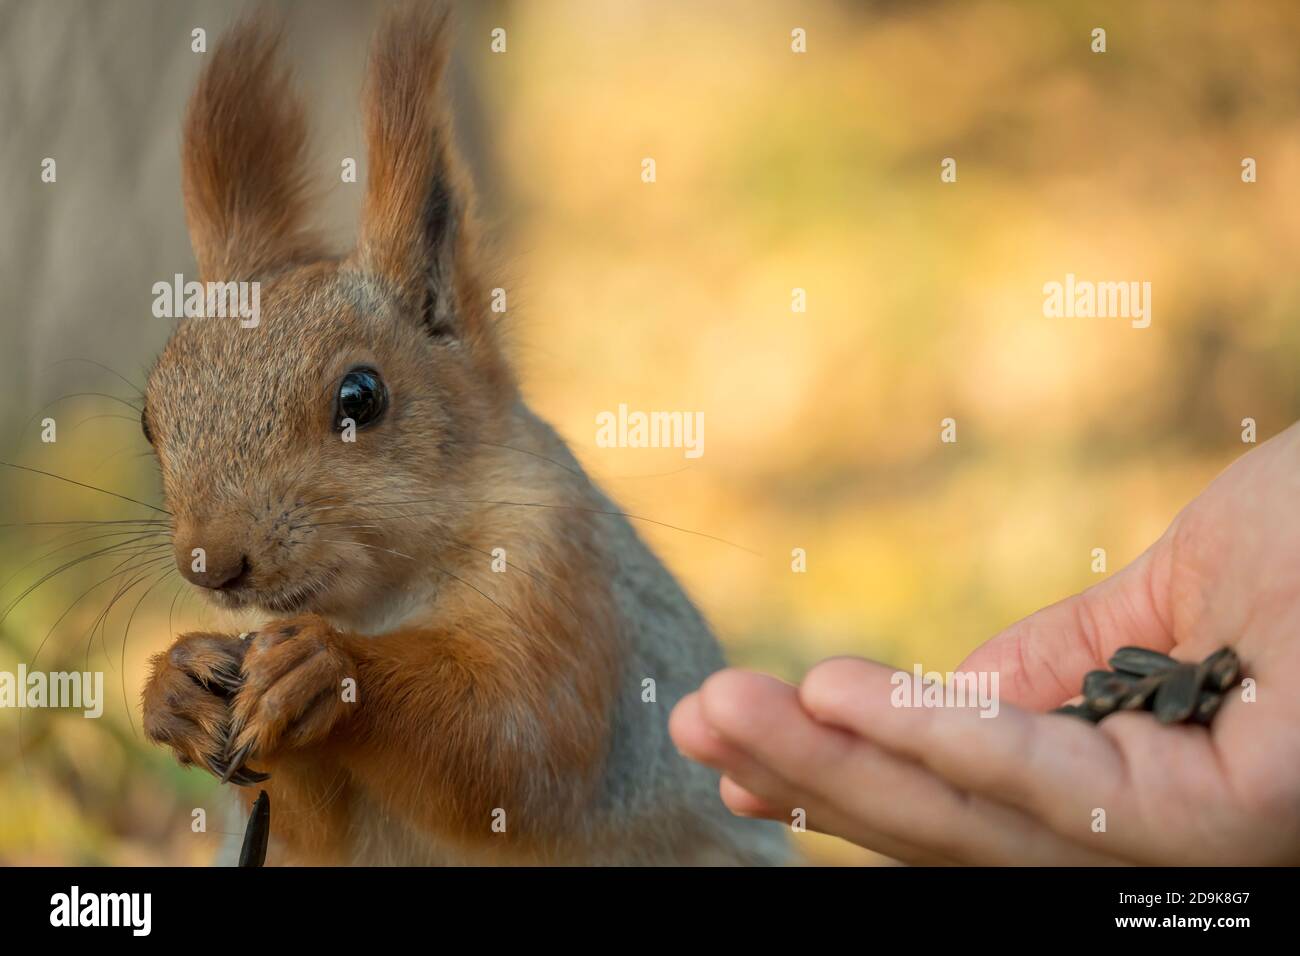 Uno scoiattolo con una coda soffice stuzzica i semi. Natura selvaggia, scoiattolo grigio nella foresta d'autunno. Lo scoiattolo mangia da vicino. Zoologia, mammiferi, natura. Piccolo Foto Stock